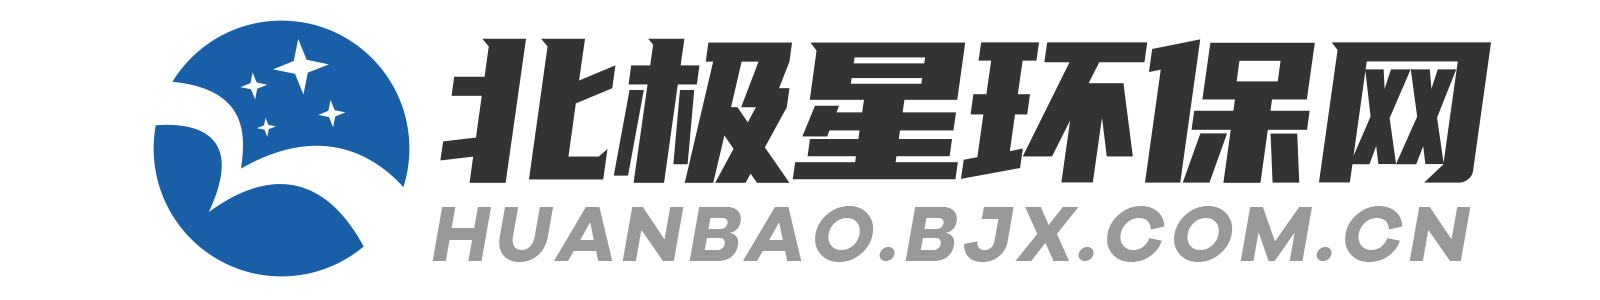 HUANBAO.BJX.COM.CN 